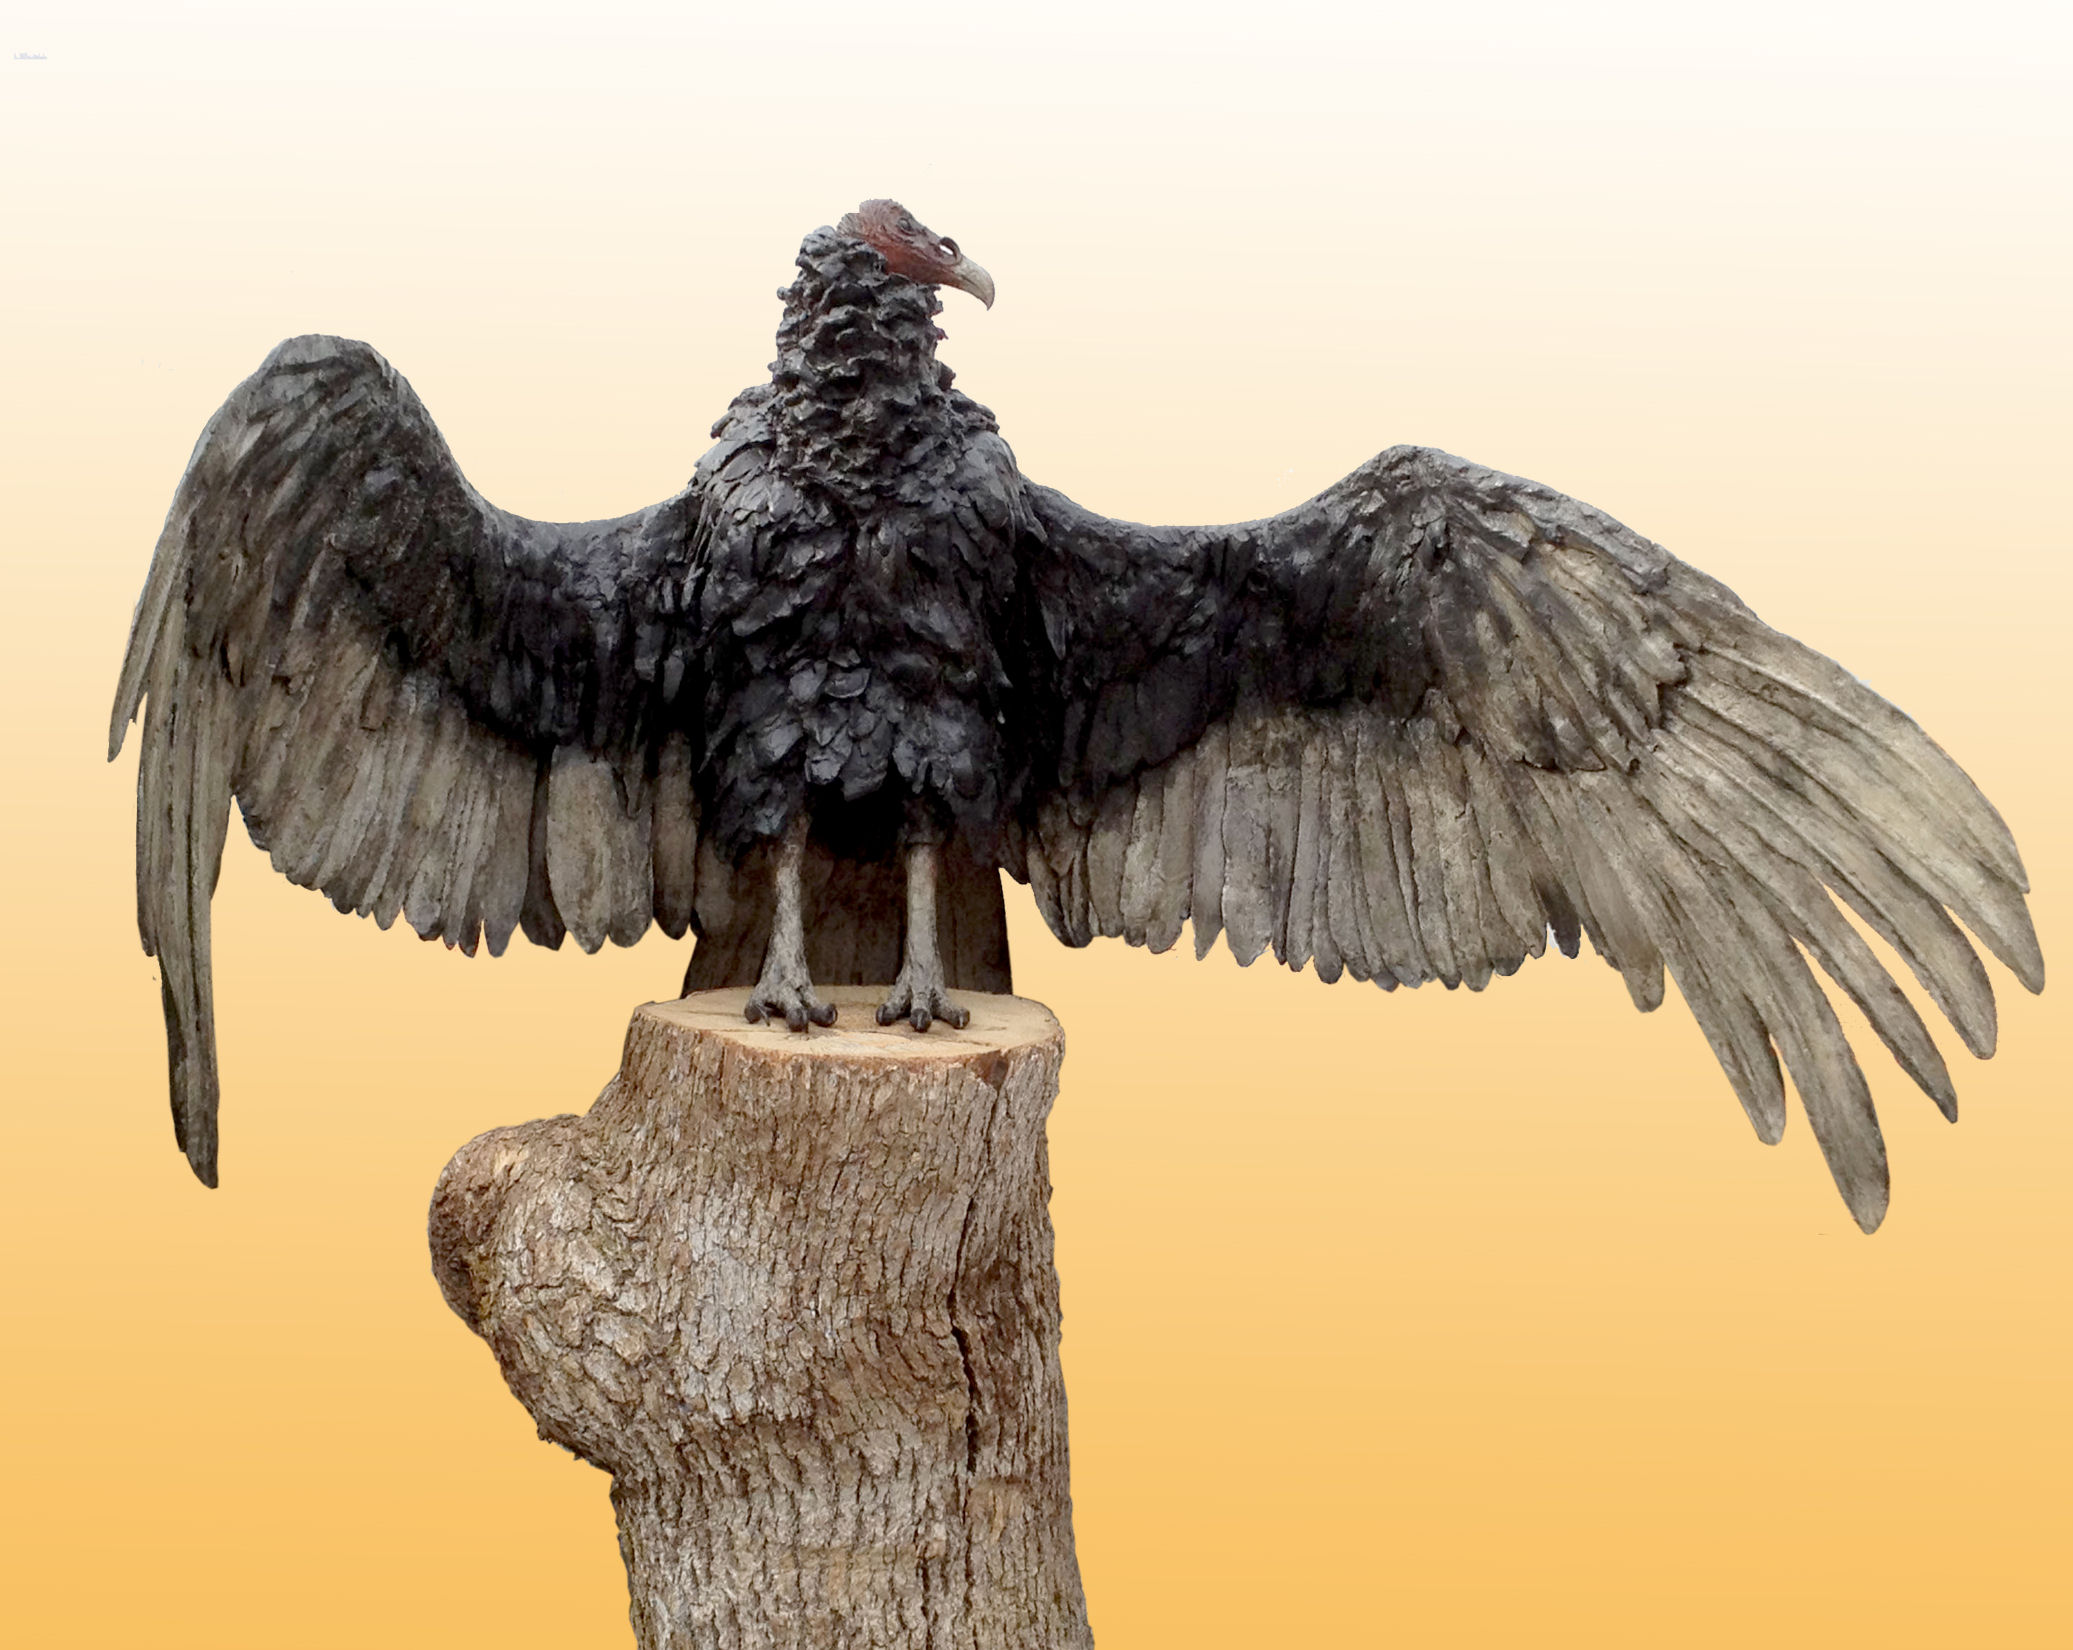 Vulture sculpture photo